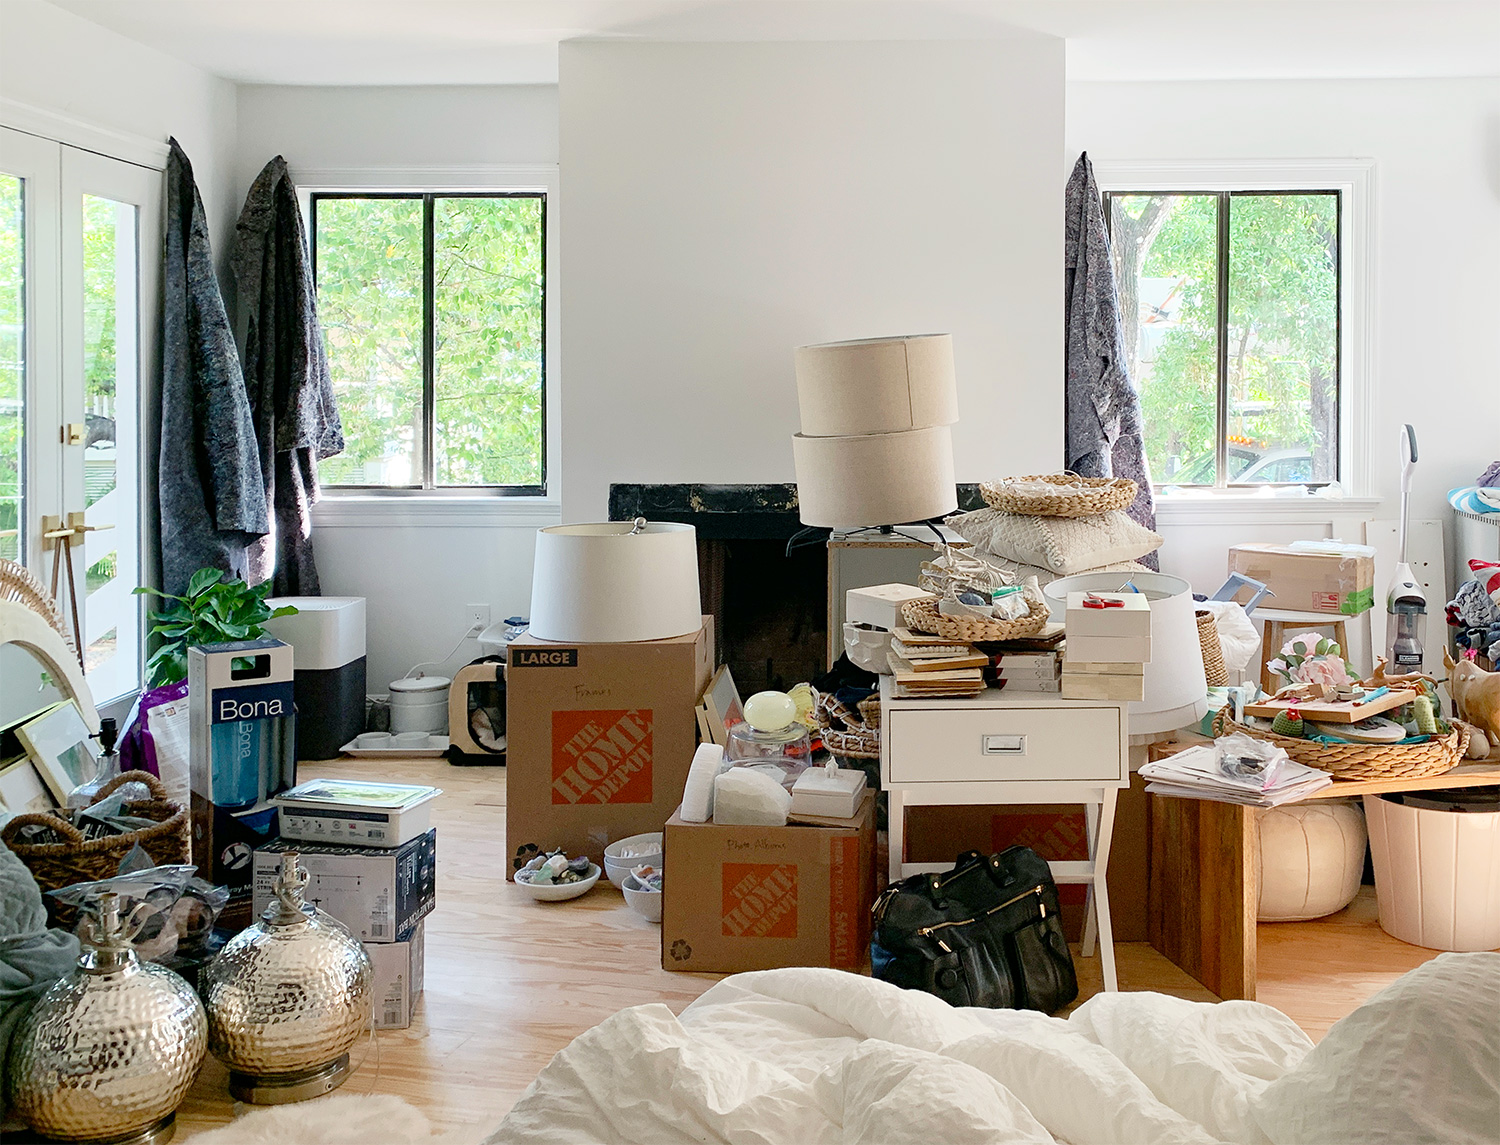 Dormitorio desordenado justo después de la mudanza con cajas y basura en todas partes